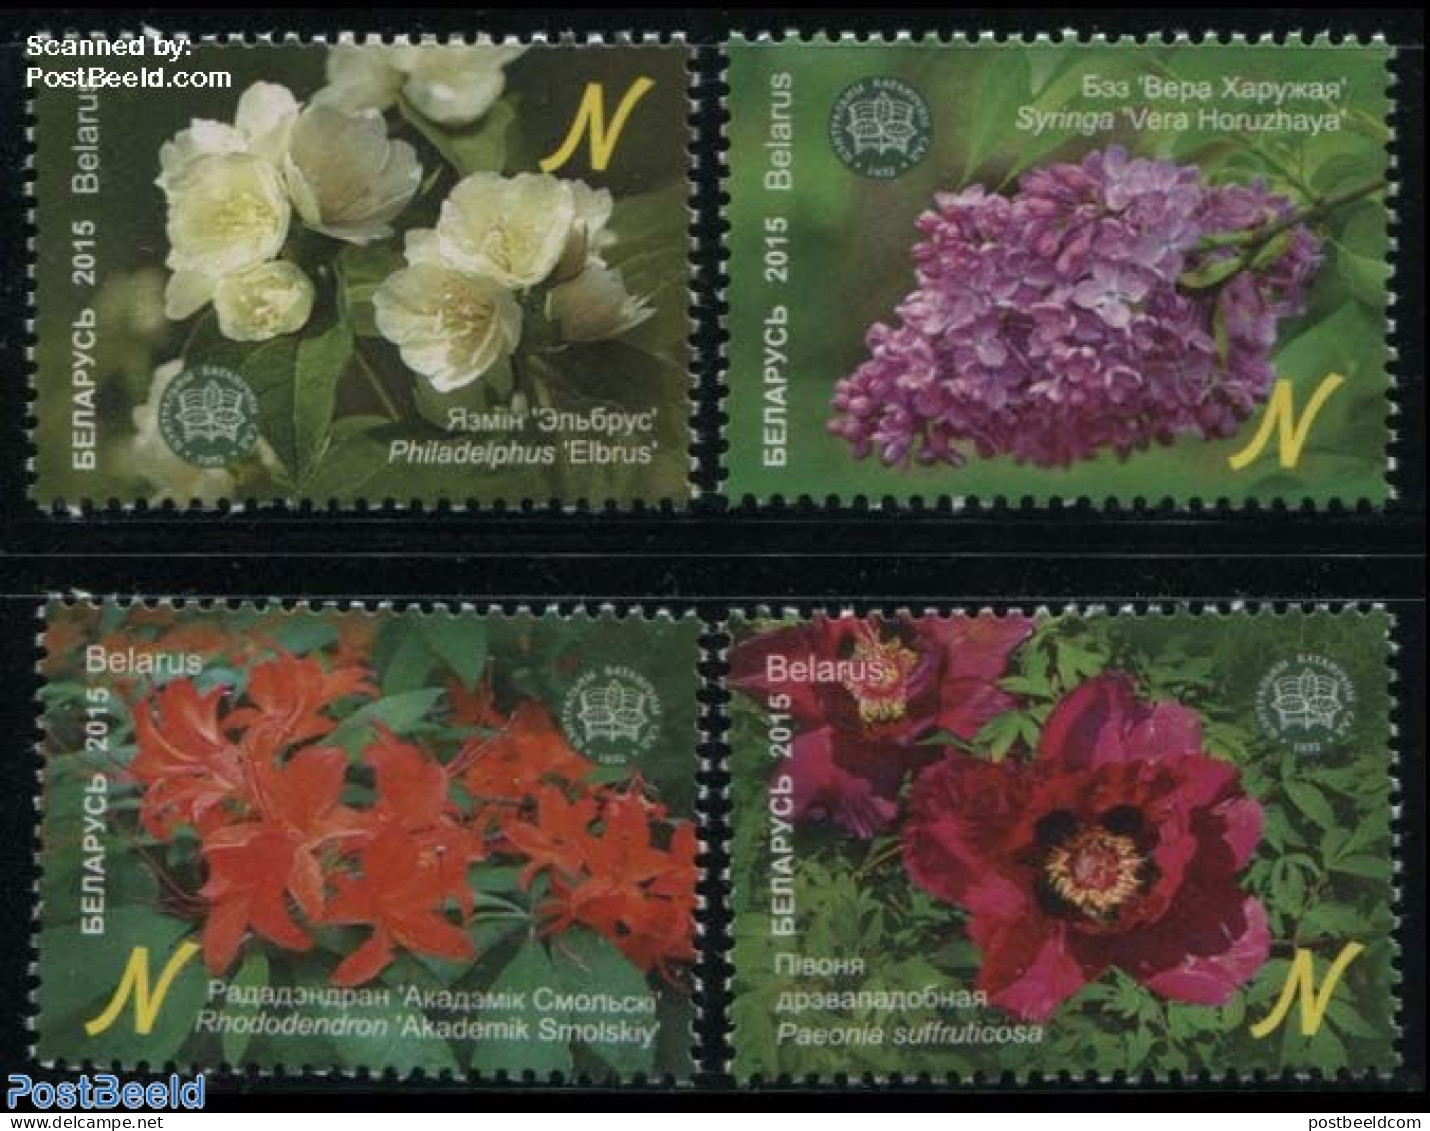 Belarus 2015 Botanical Garden 4v, Mint NH, Nature - Flowers & Plants - Wit-Rusland